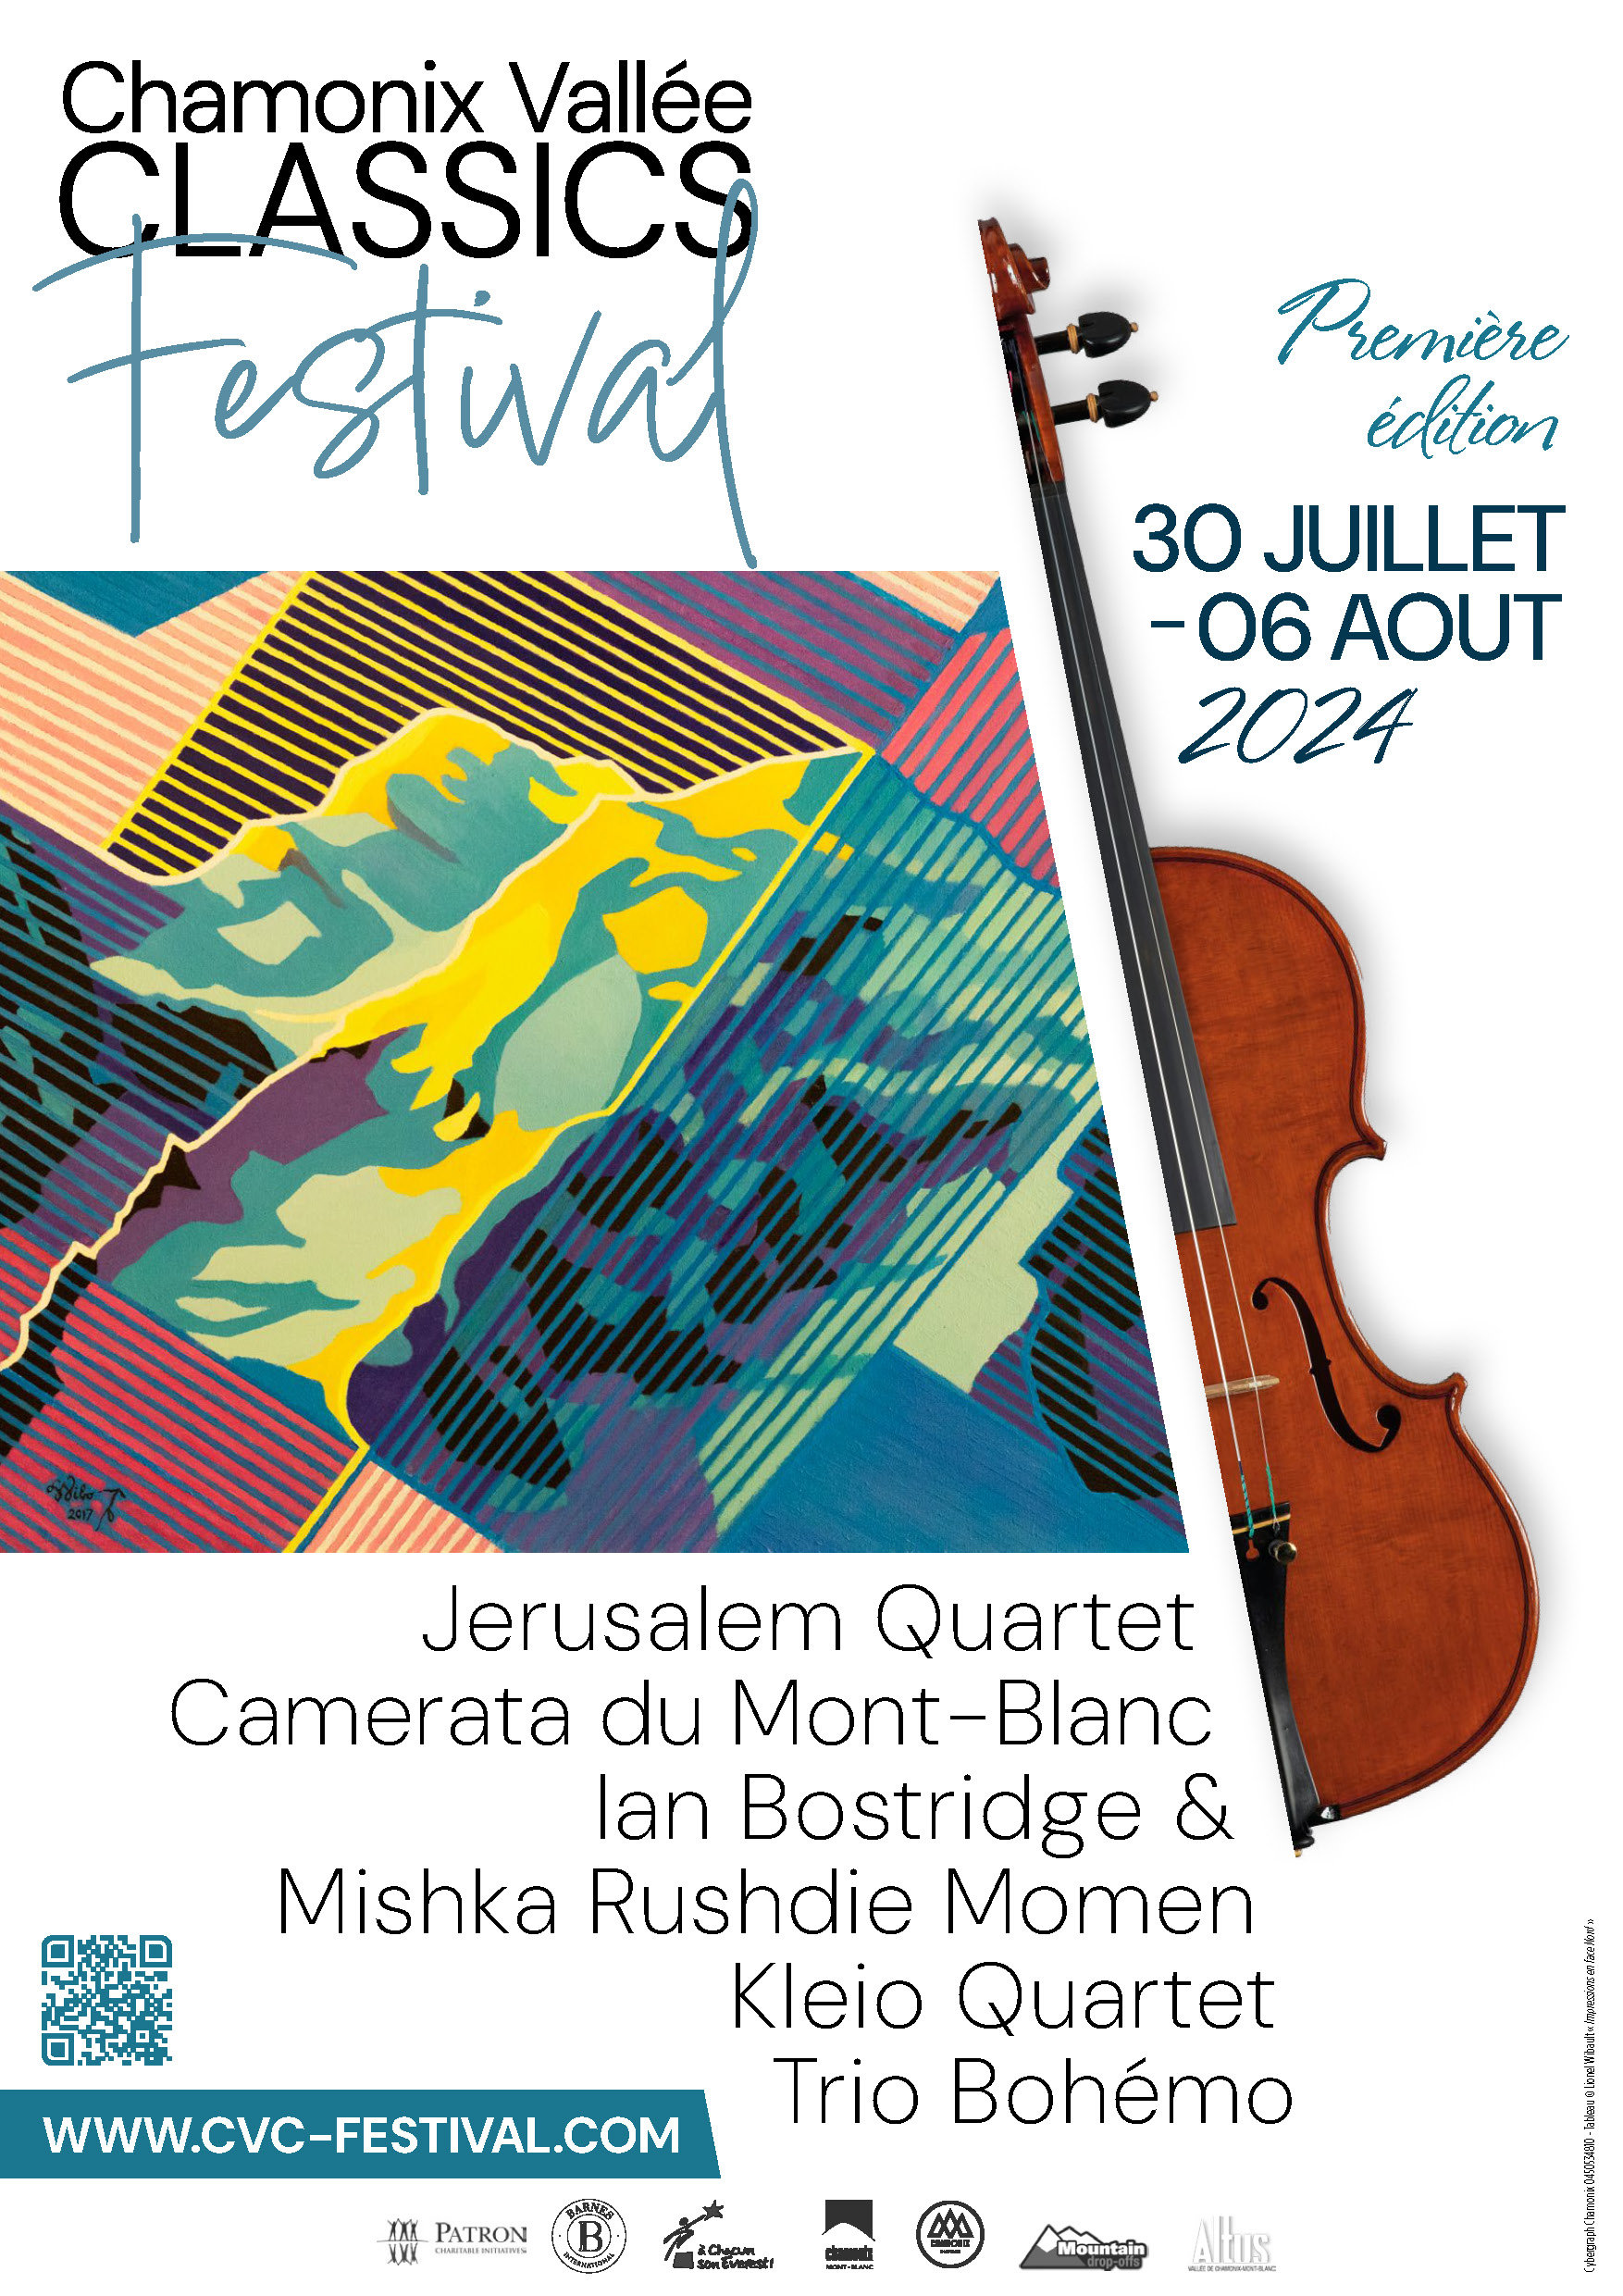 Chamonix Vallée Classics Festival, 1ère édition du 30 juillet au 06 août 2024